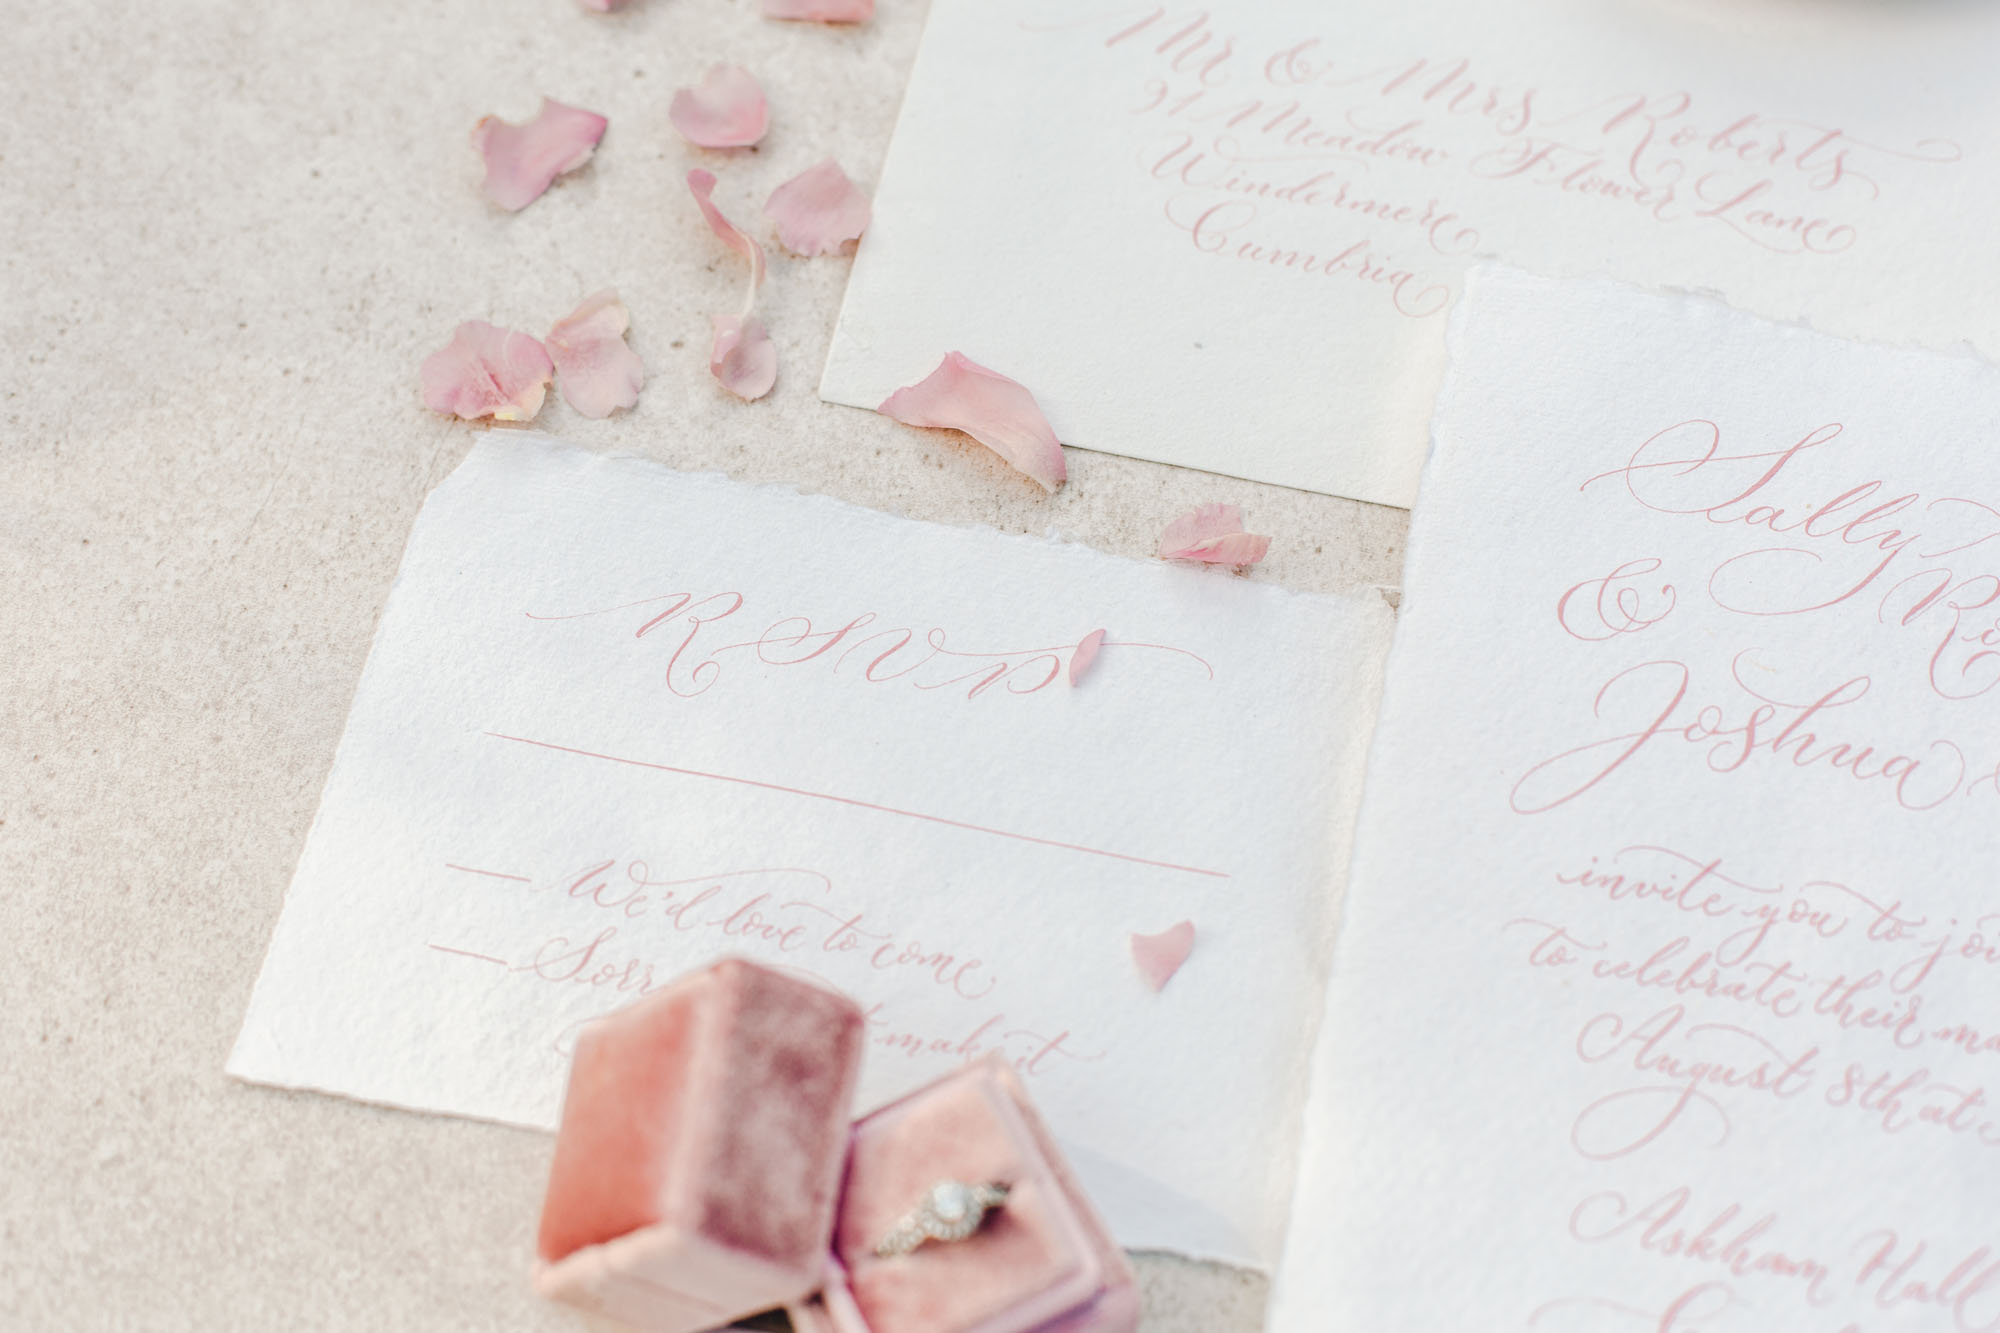 Delicate blush pink wedding invitation handwritten in modern calligraphy